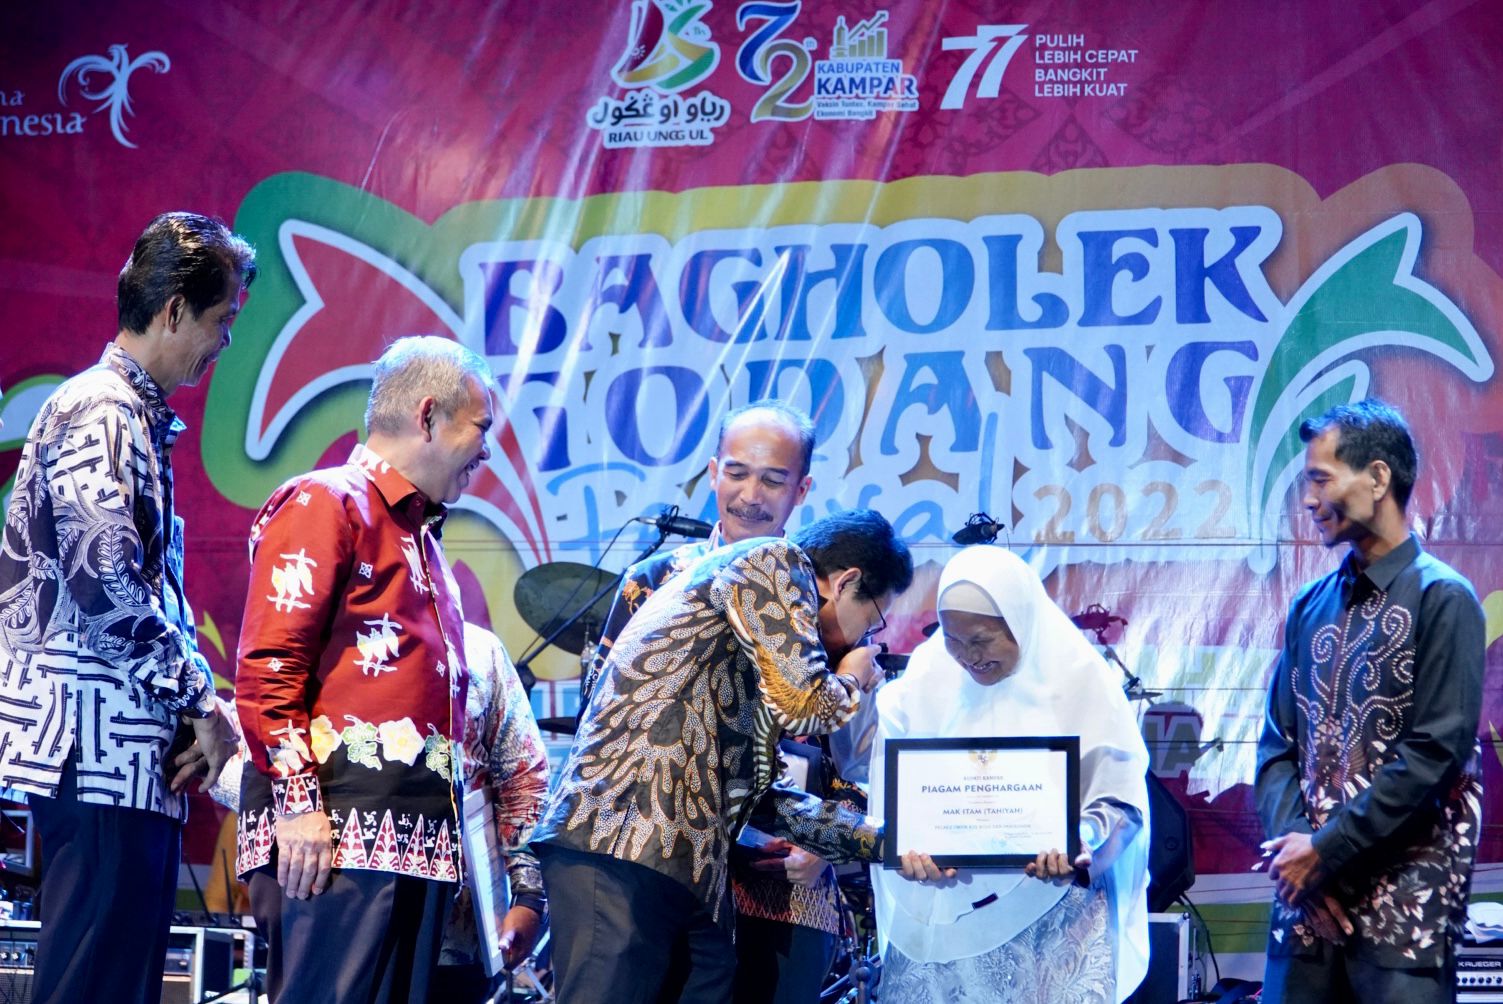 Tutup Bagholek Godang Festival Kampar Tahun 2022. Menteri Desa PDTT RI  Halim Iskandar Puji Kampar Negeri Beradat Dan Agamis